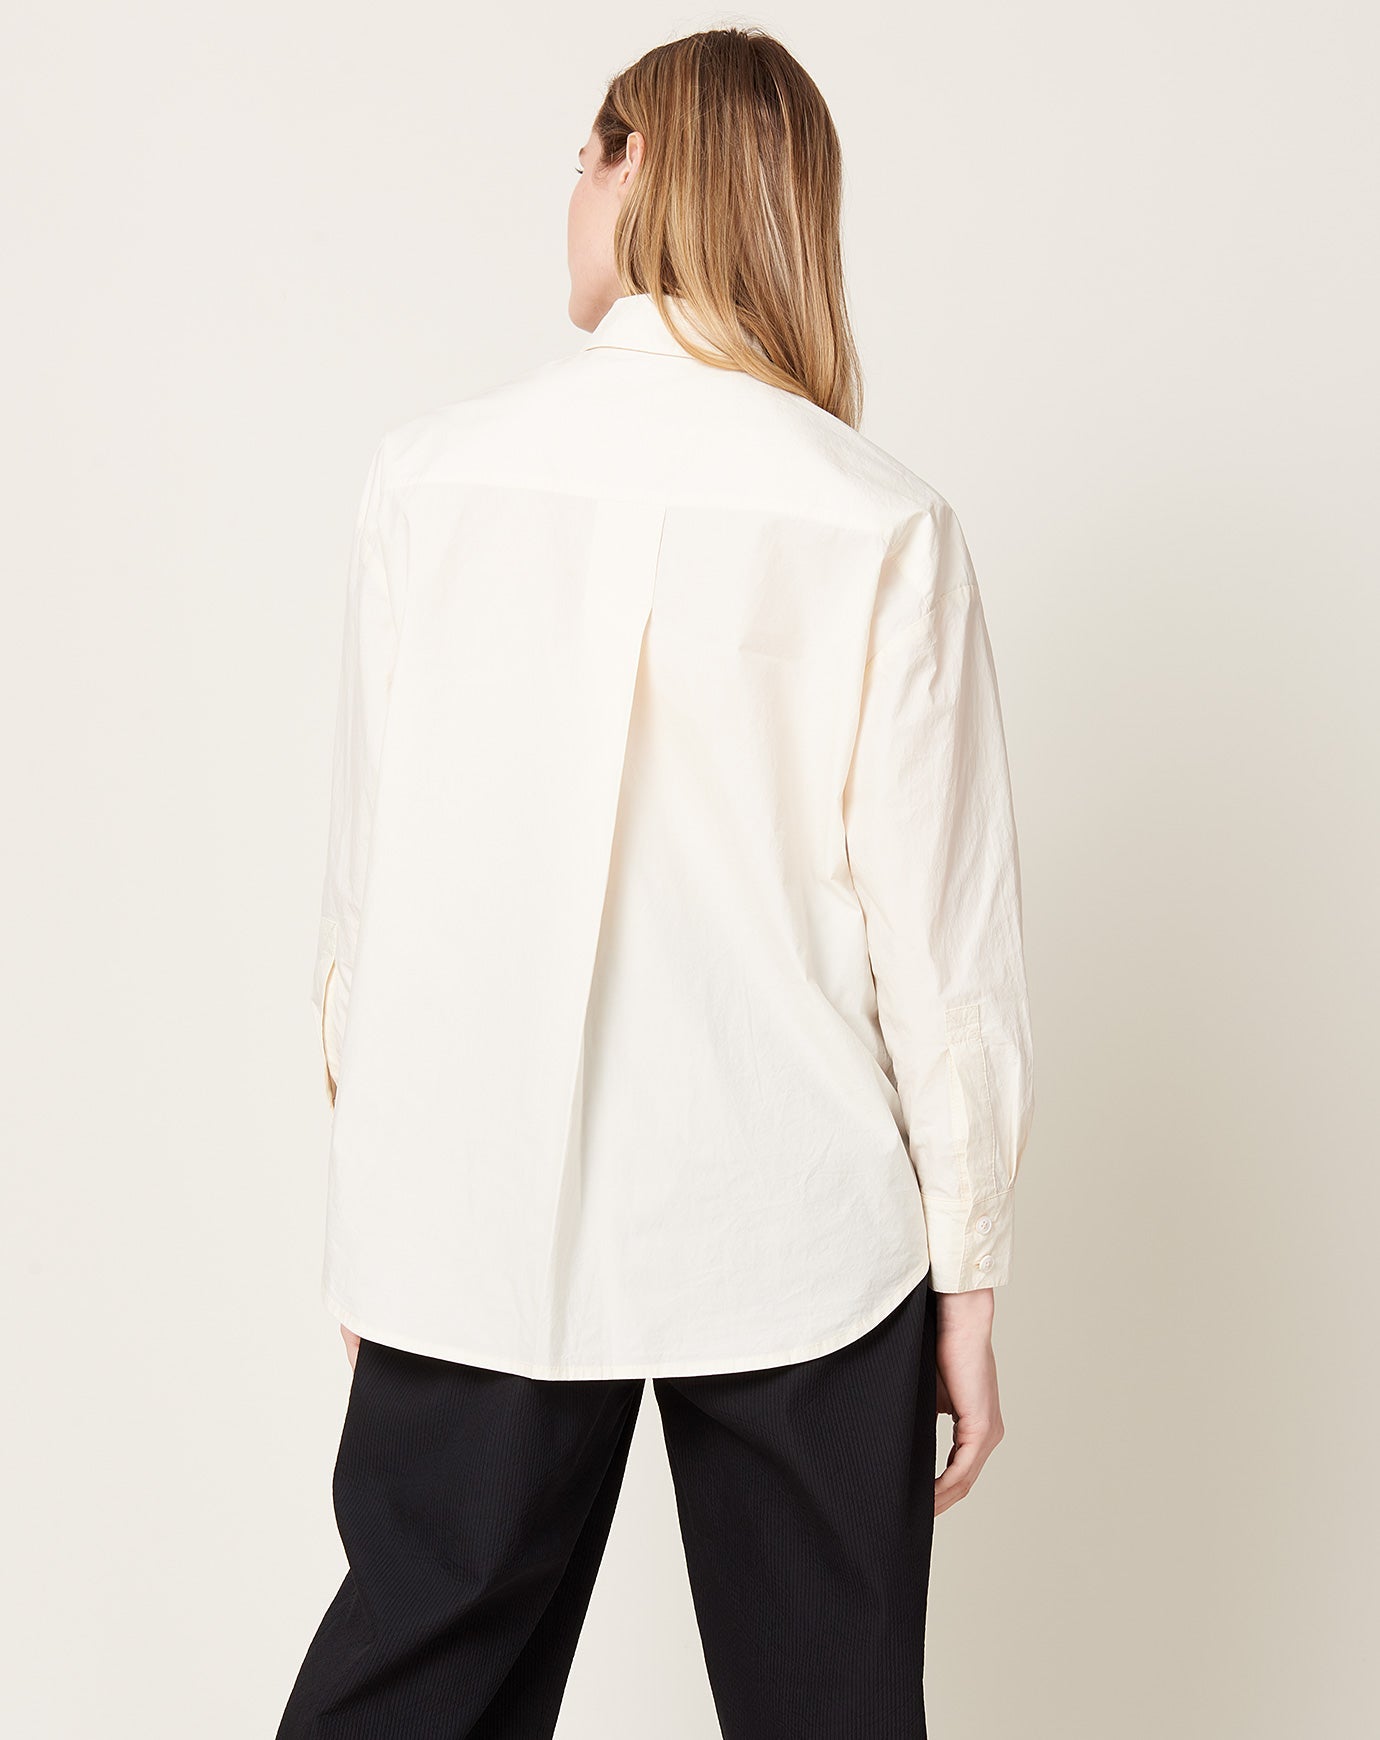 7115 by Szeki Papery Dolman Shirt in Off White